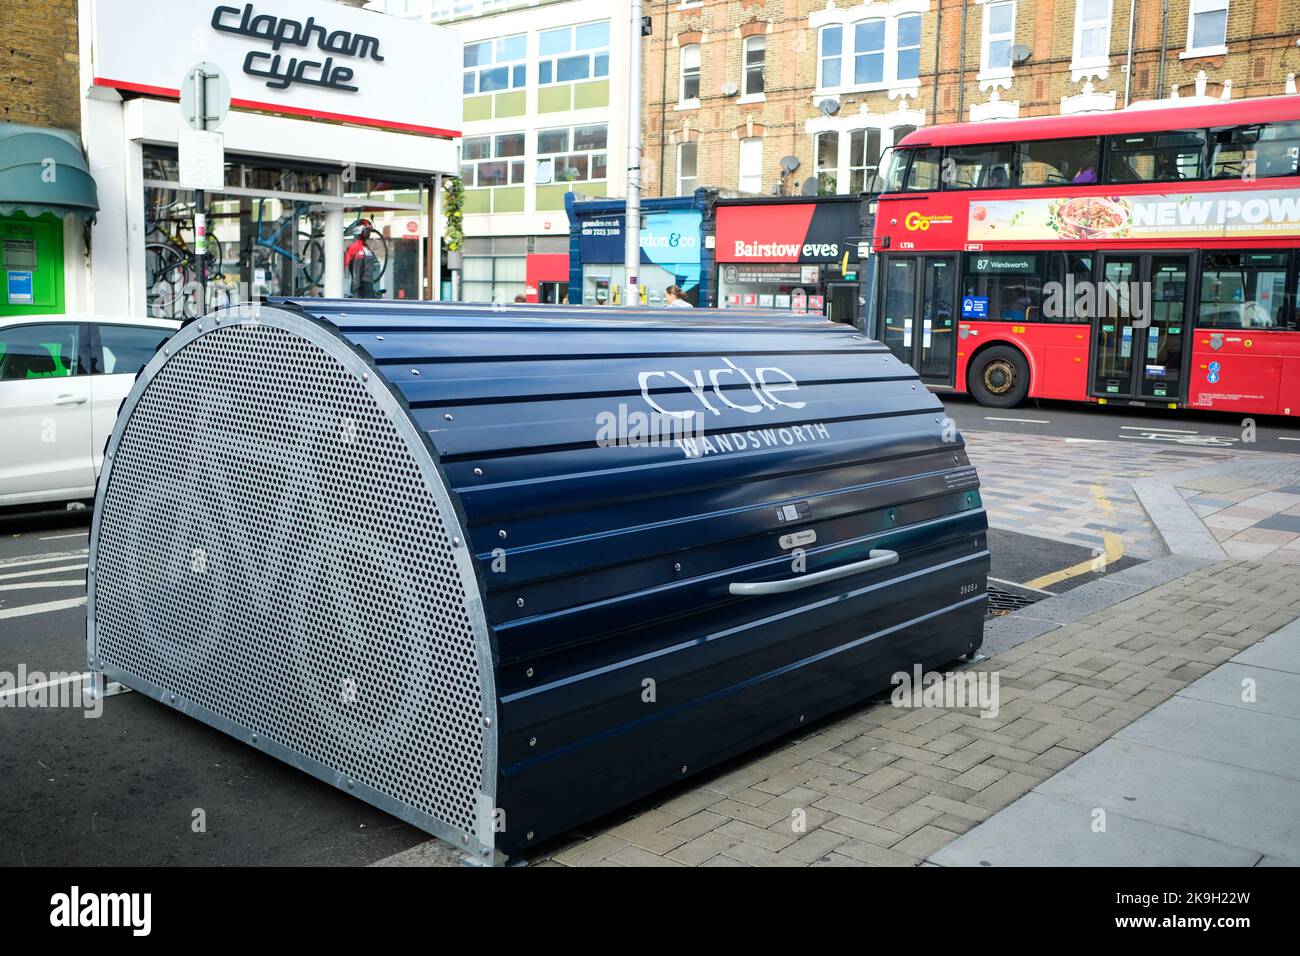 London - Oktober 2022: Ein öffentlicher Fahrraddepot, der vom wandsworth council in der Nähe der Clapham Junction zur Verfügung gestellt wird Stockfoto